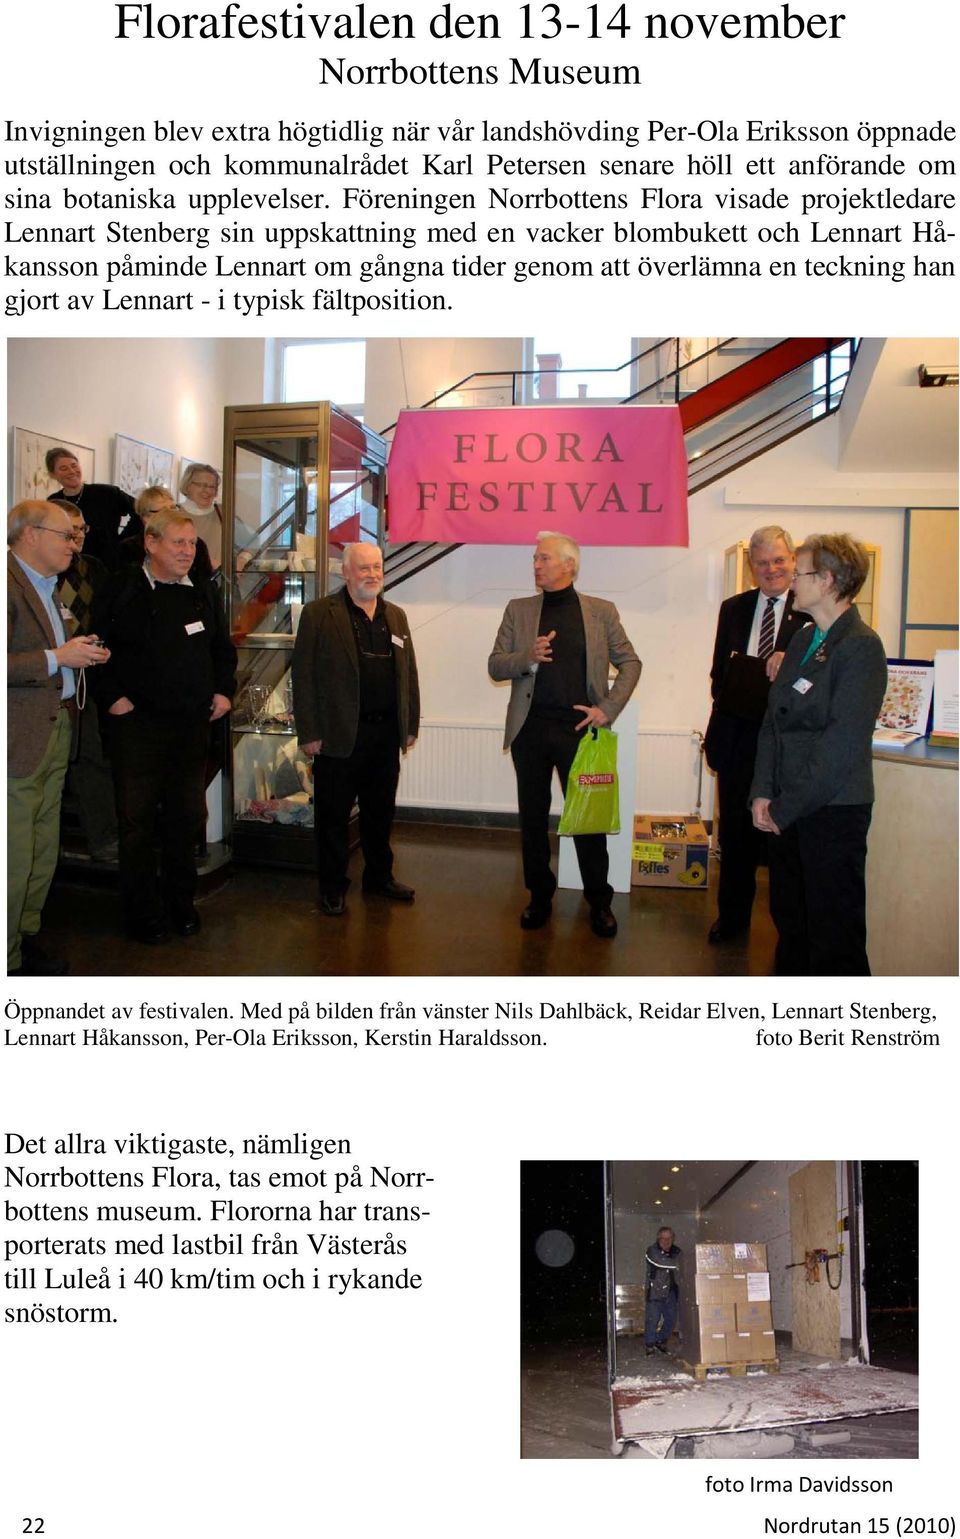 Föreningen Norrbottens Flora visade projektledare Lennart Stenberg sin uppskattning med en vacker blombukett och Lennart Håkansson påminde Lennart om gångna tider genom att överlämna en teckning han